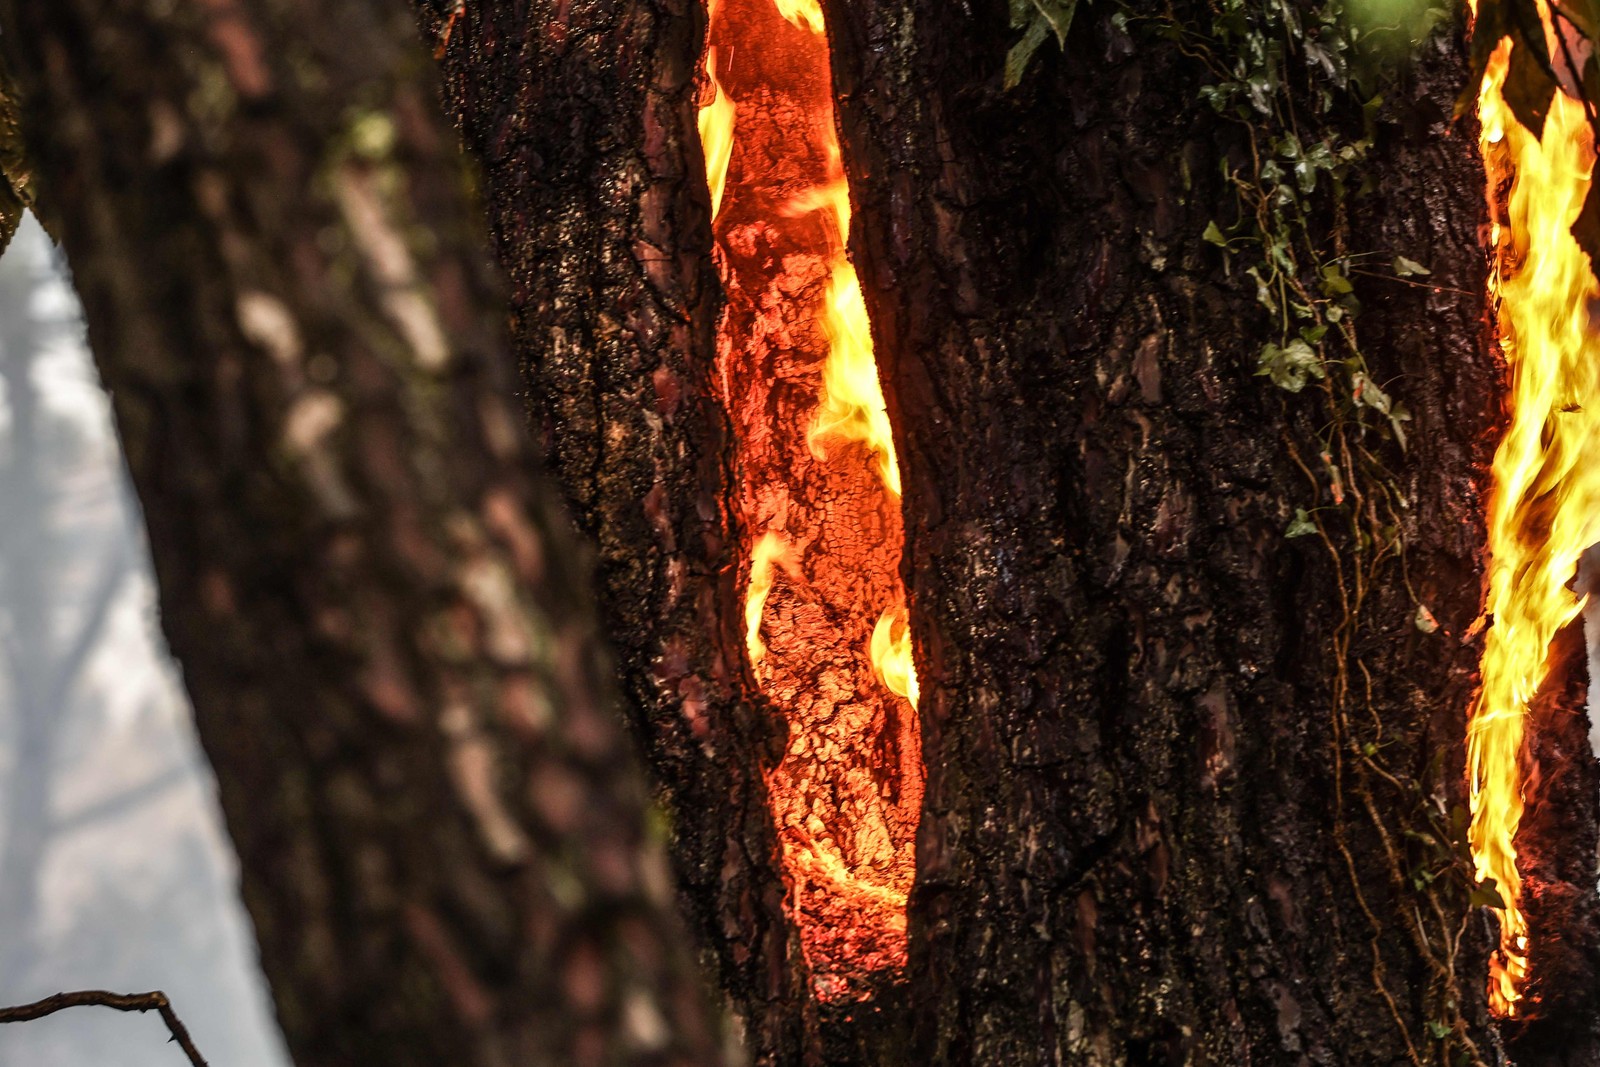 Tronco arde em chamas  no fundo da Duna du Pyla, perto de La Teste-de-Buch, sudoeste da França — Foto: THIBAUD MORITZ / AFP